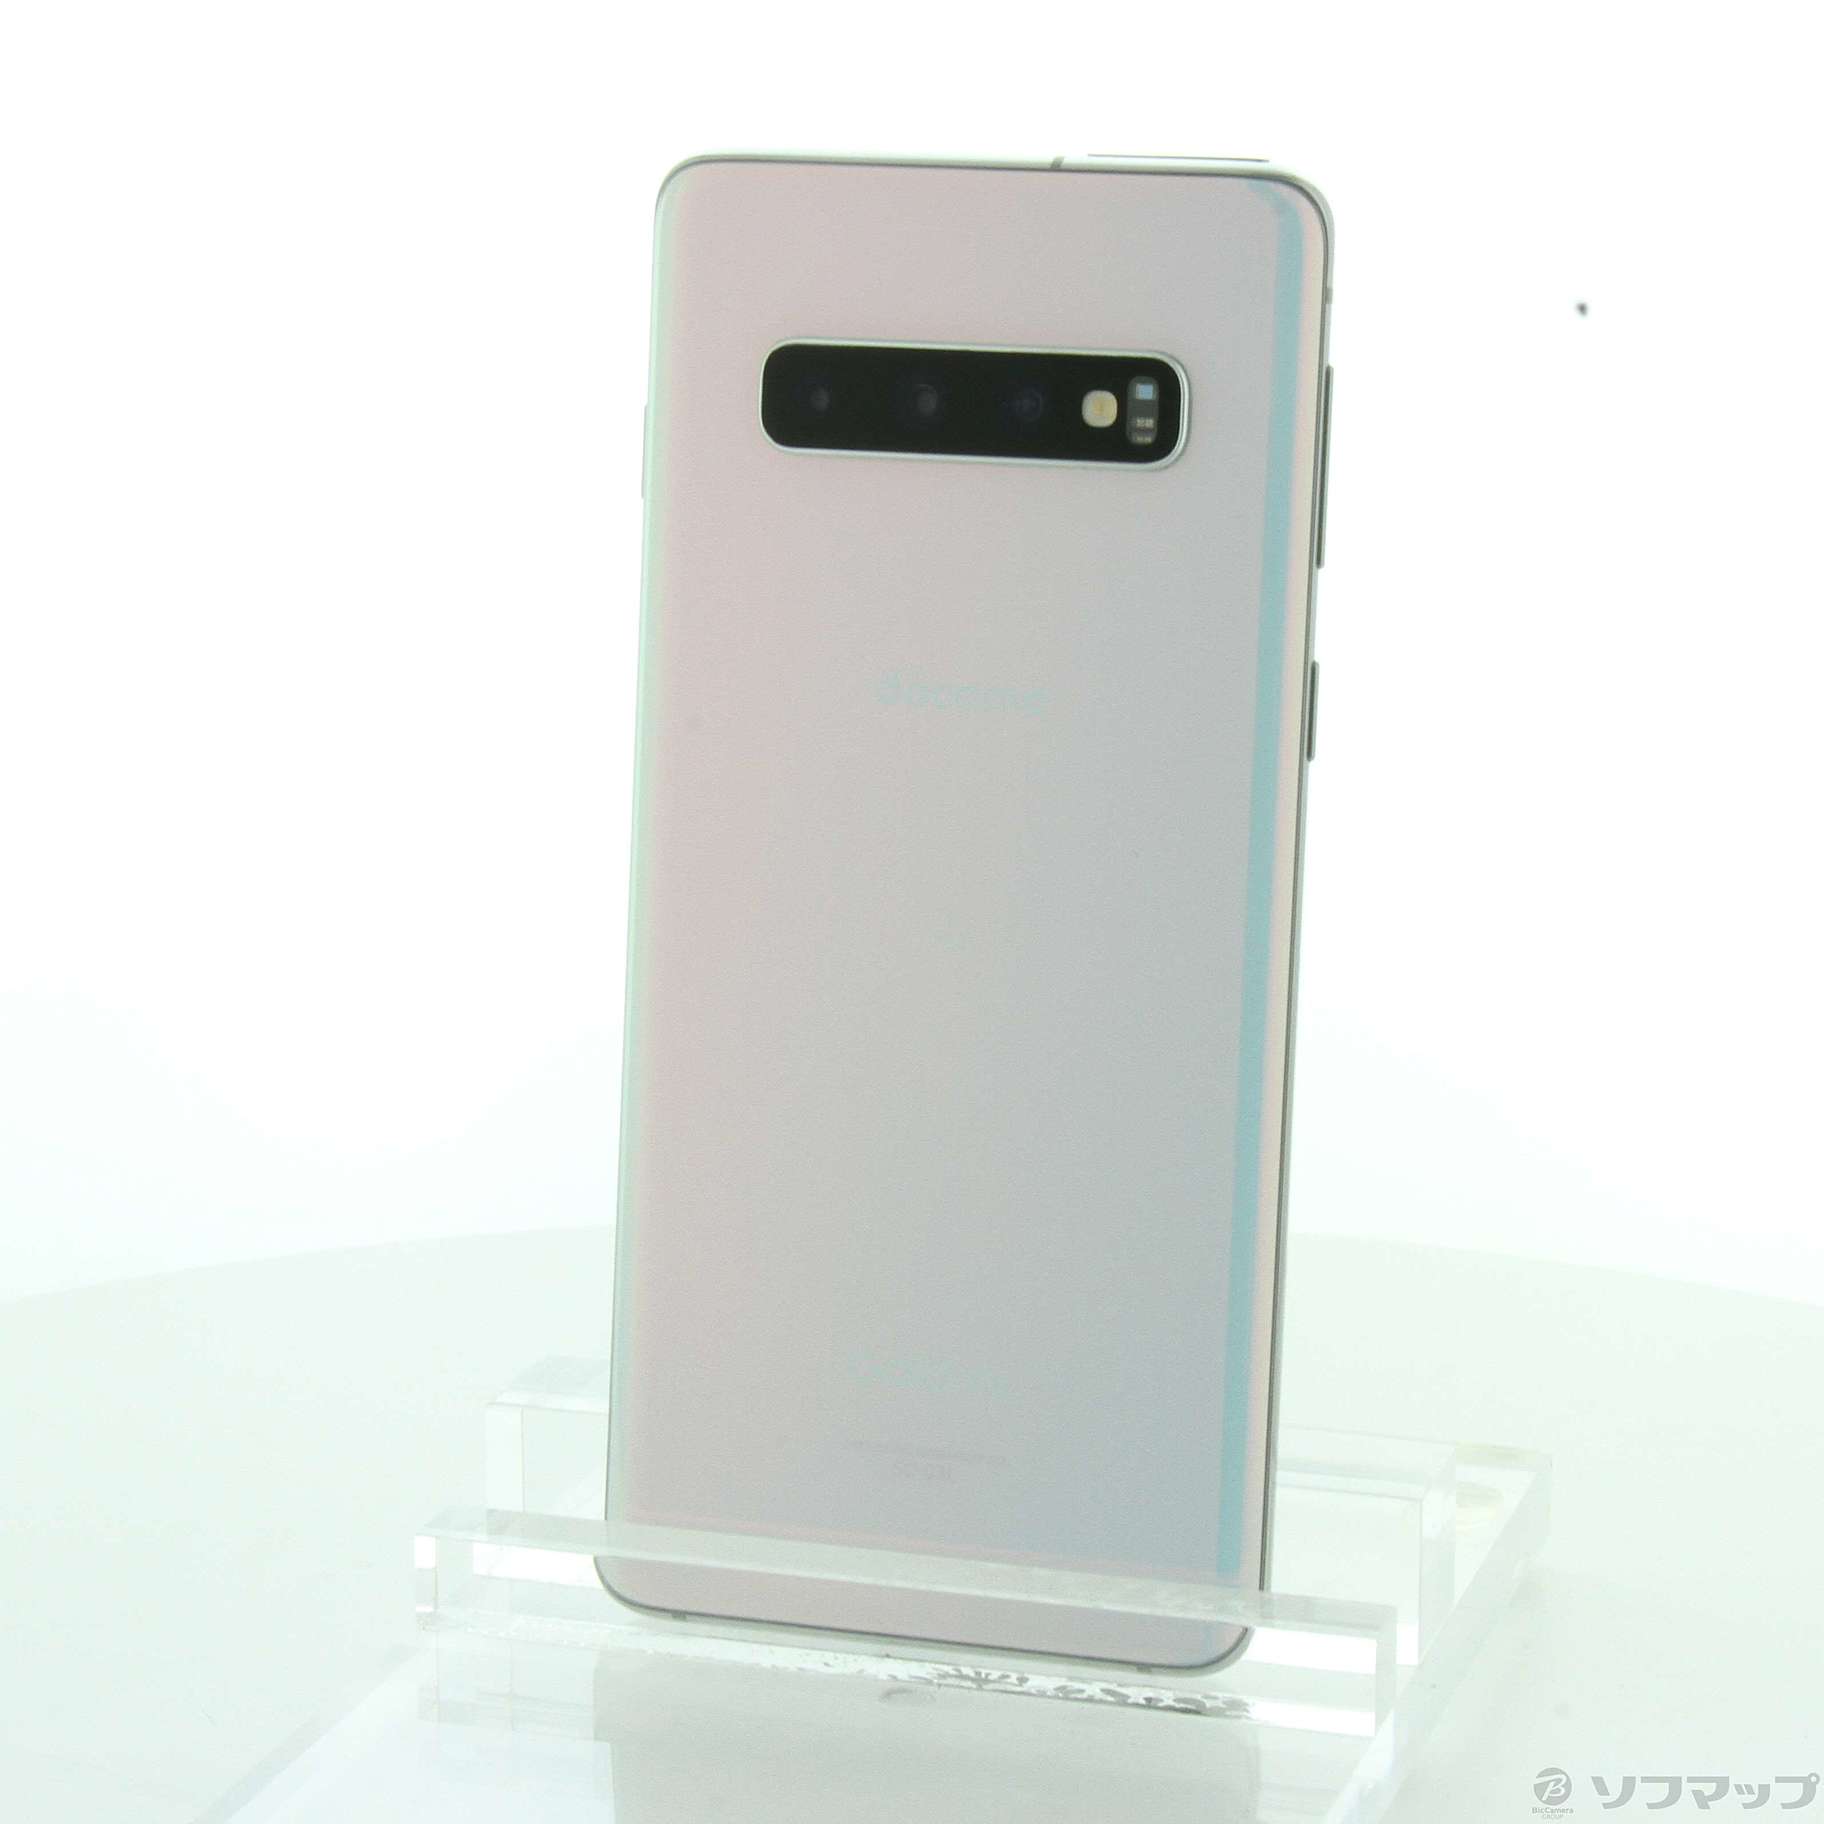 Galaxy S10 Prism White スマートフォン新品未使用